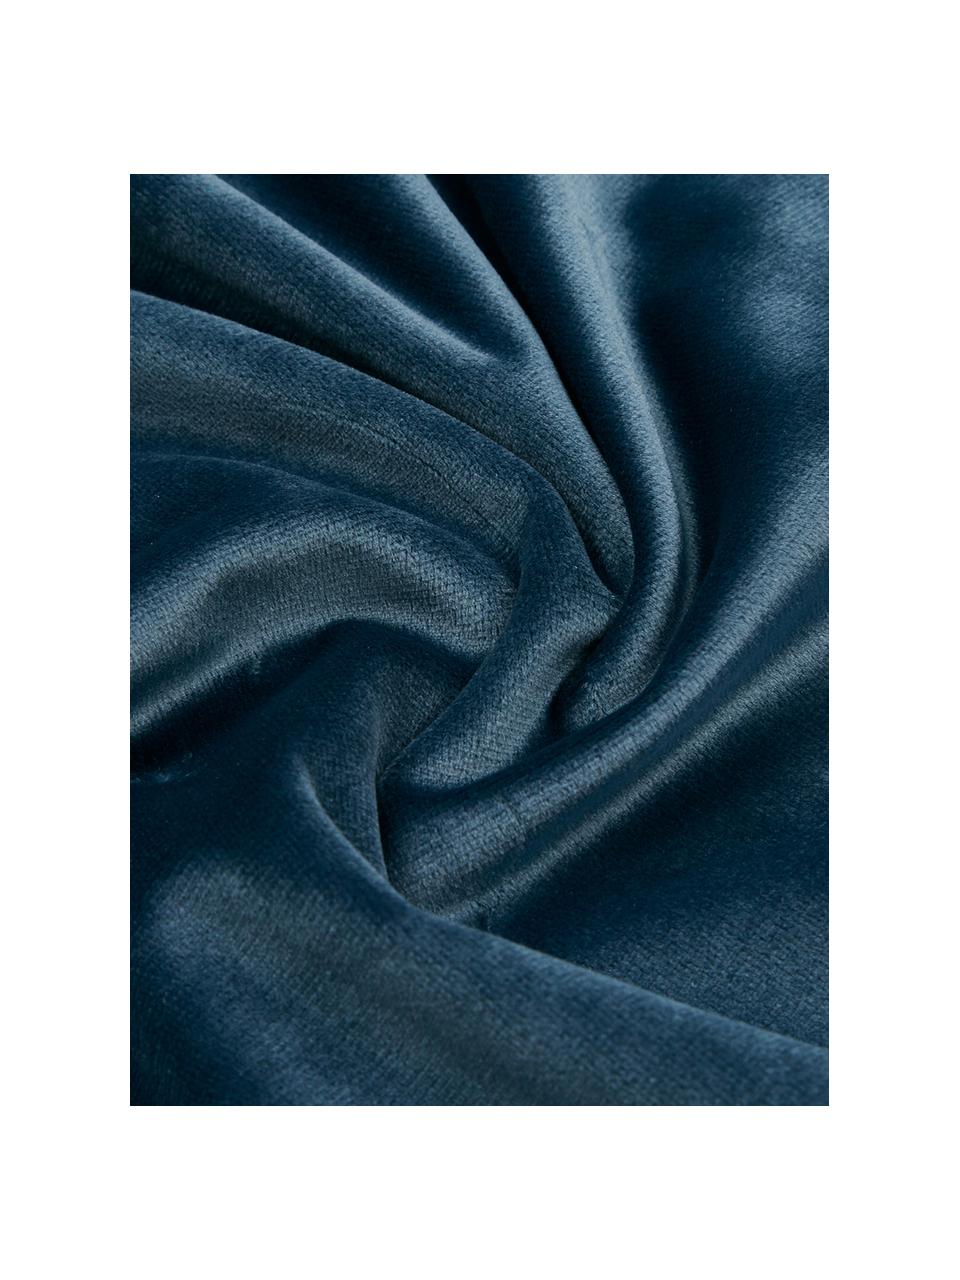 Samt-Wendebettwäsche Tender mit Baumwoll-Rückseite, Vorderseite: Polyestersamt, Rückseite: 100% Baumwolle Bettwäsche, Blau, 135 x 200 cm + 1 Kissen 80 x 80 cm